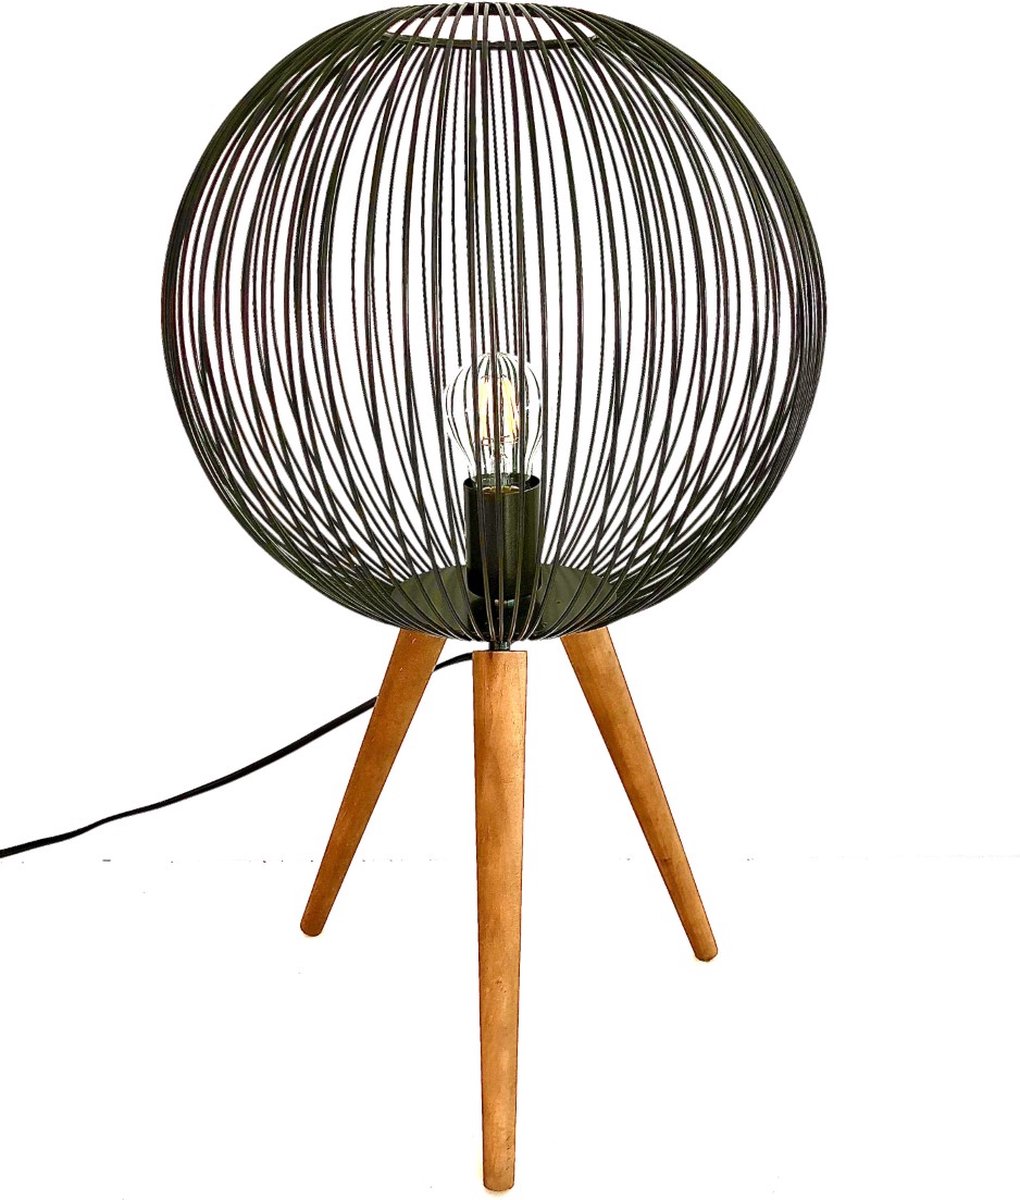 Black Cage Globe Lamp on 3 Wooden Feet 75,5 cm hoog - tafellamp - vloerlamp - lamp industrieel - industriestijl - metaal Lamp - verlichting voor binnen - verlichting voor uw interieur - bruin metaal - interieurdecoratie - woonaccessoire - cadeau